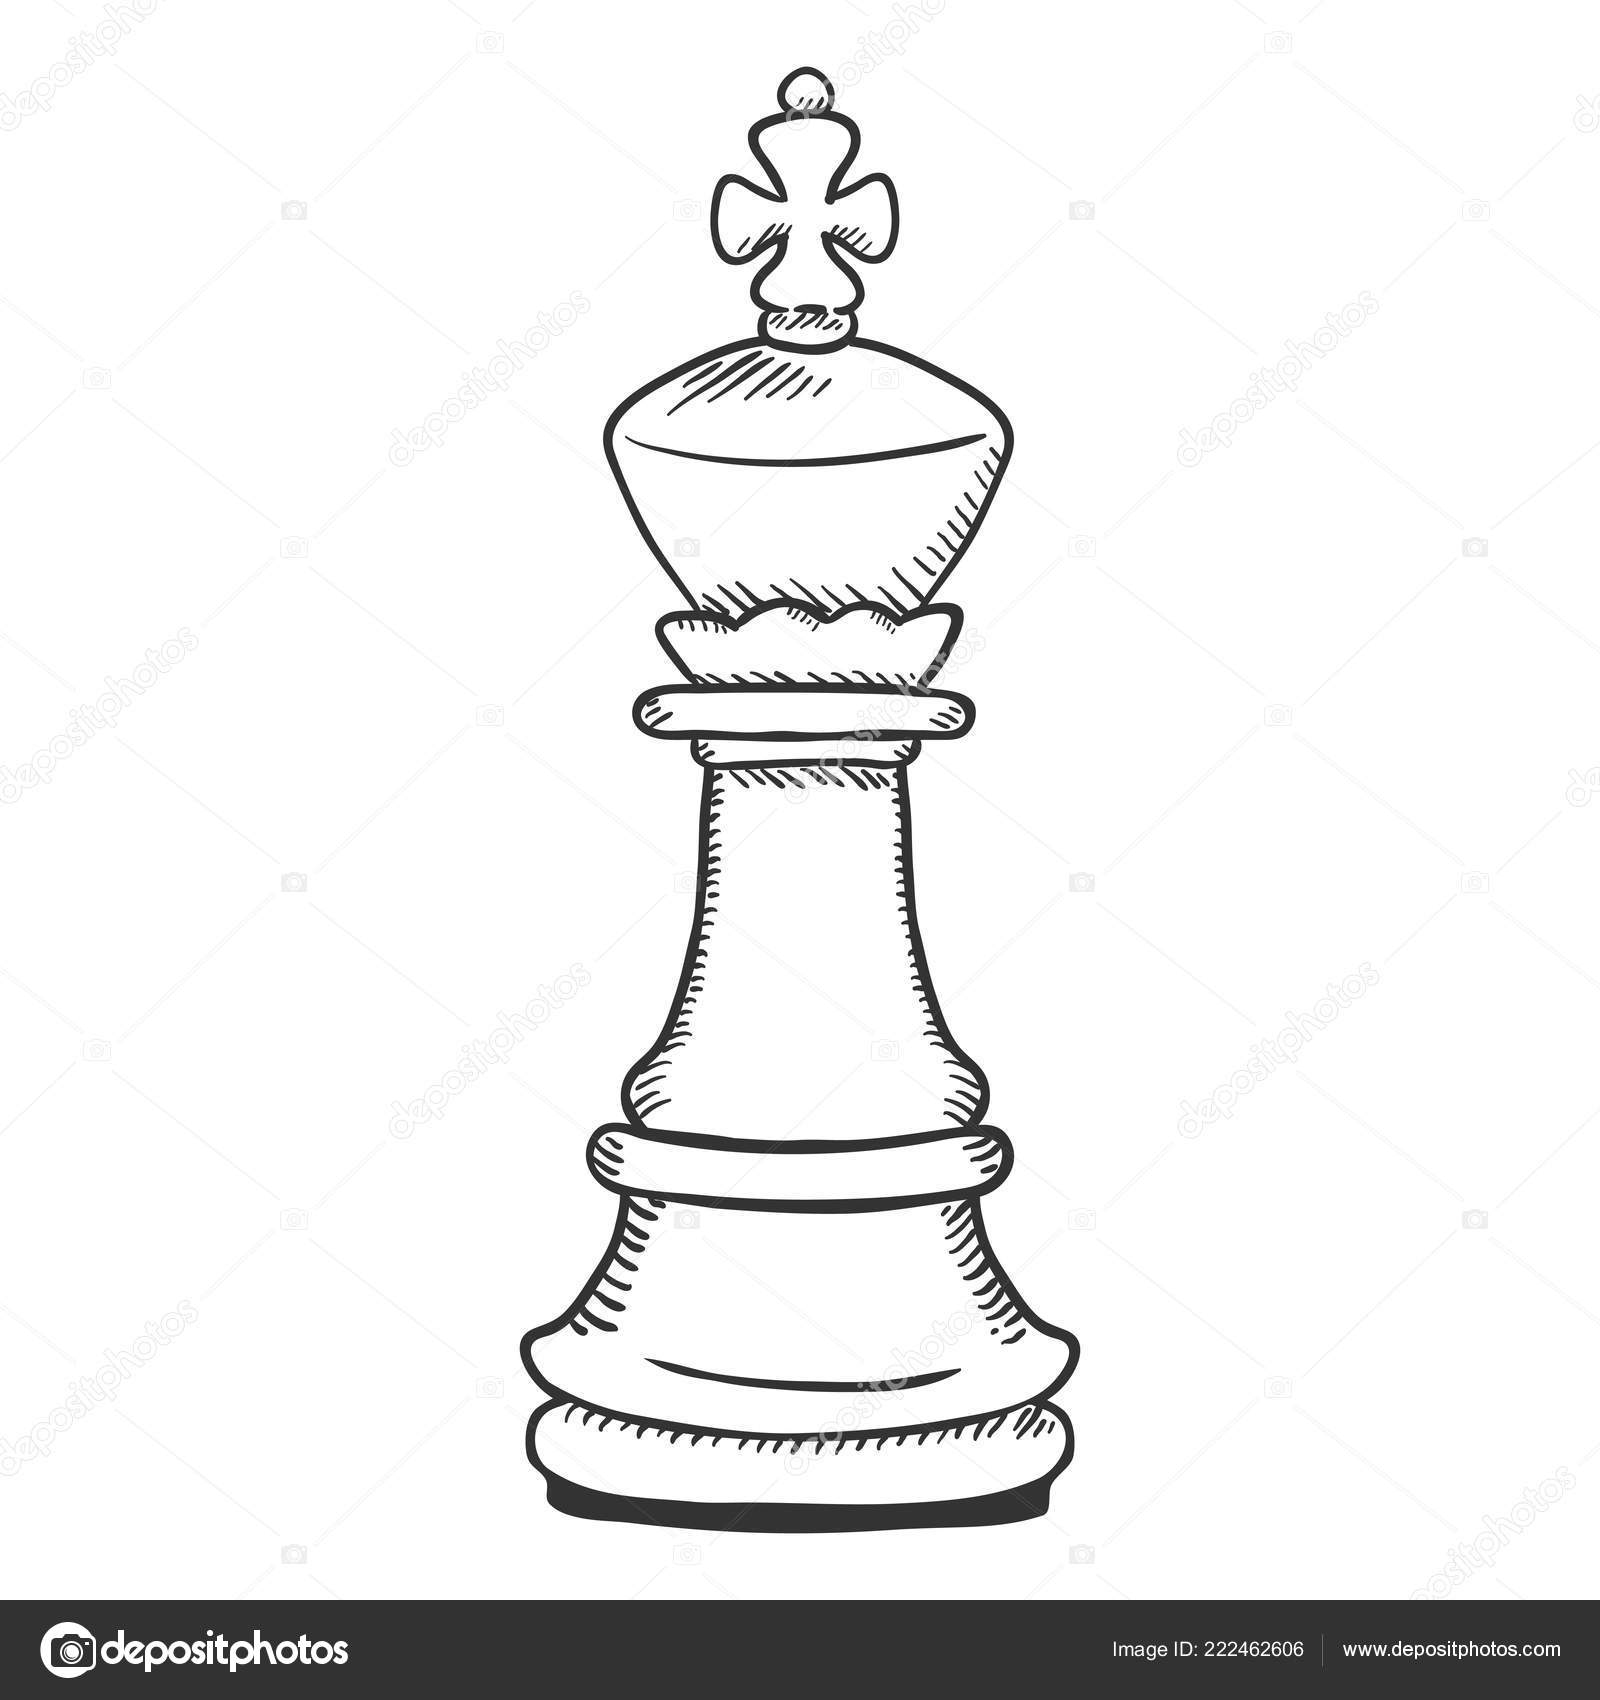 peça de xadrez rei livre de direitos Vetores Clip Art ilustração  -vc018902-CoolCLIPS.com